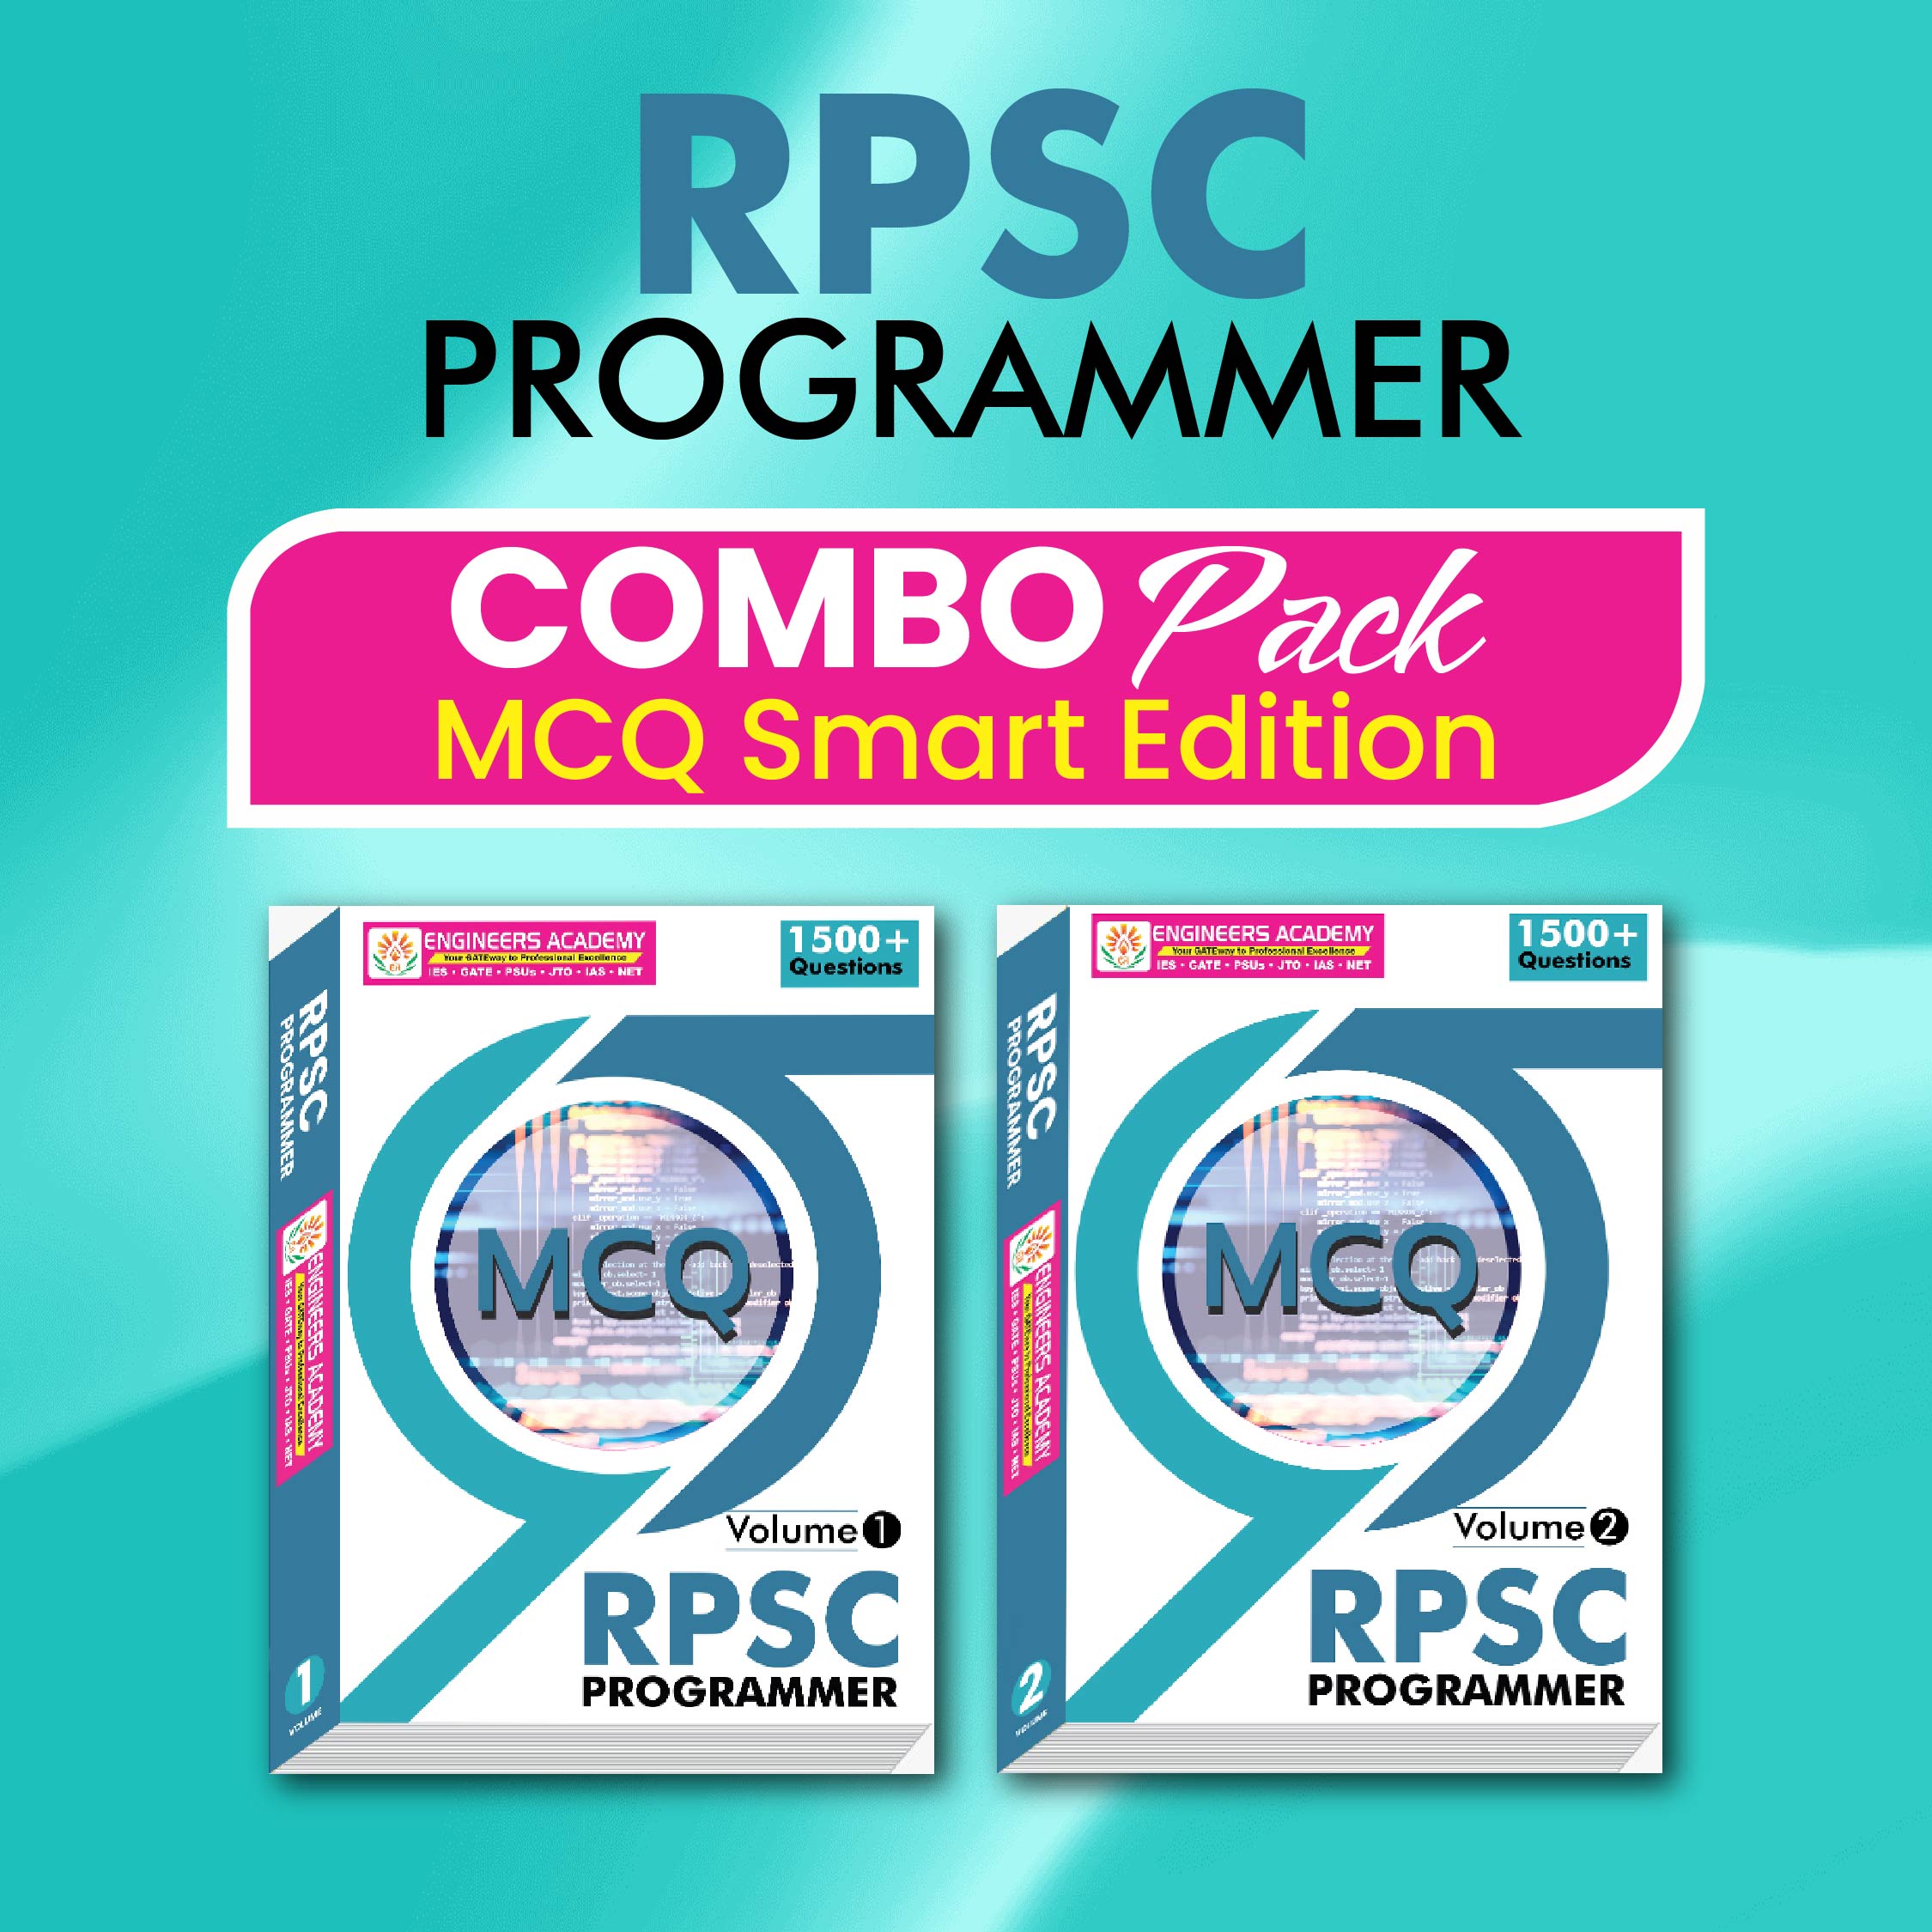 RPSC Programmer Combo Pack MCQ Volume - 1 & 2